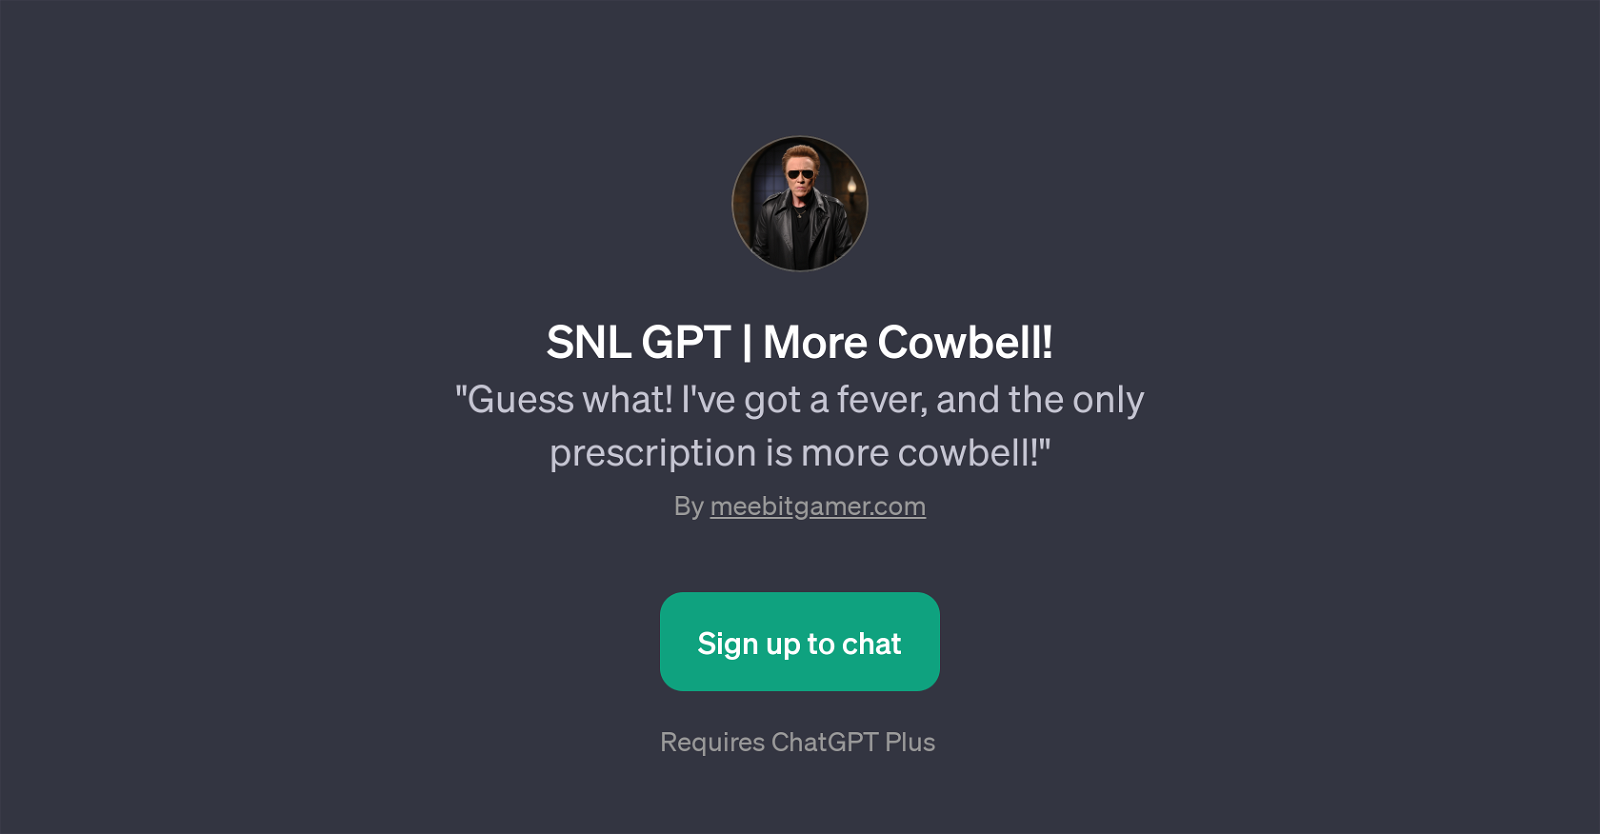 SNL GPT | More Cowbell! website